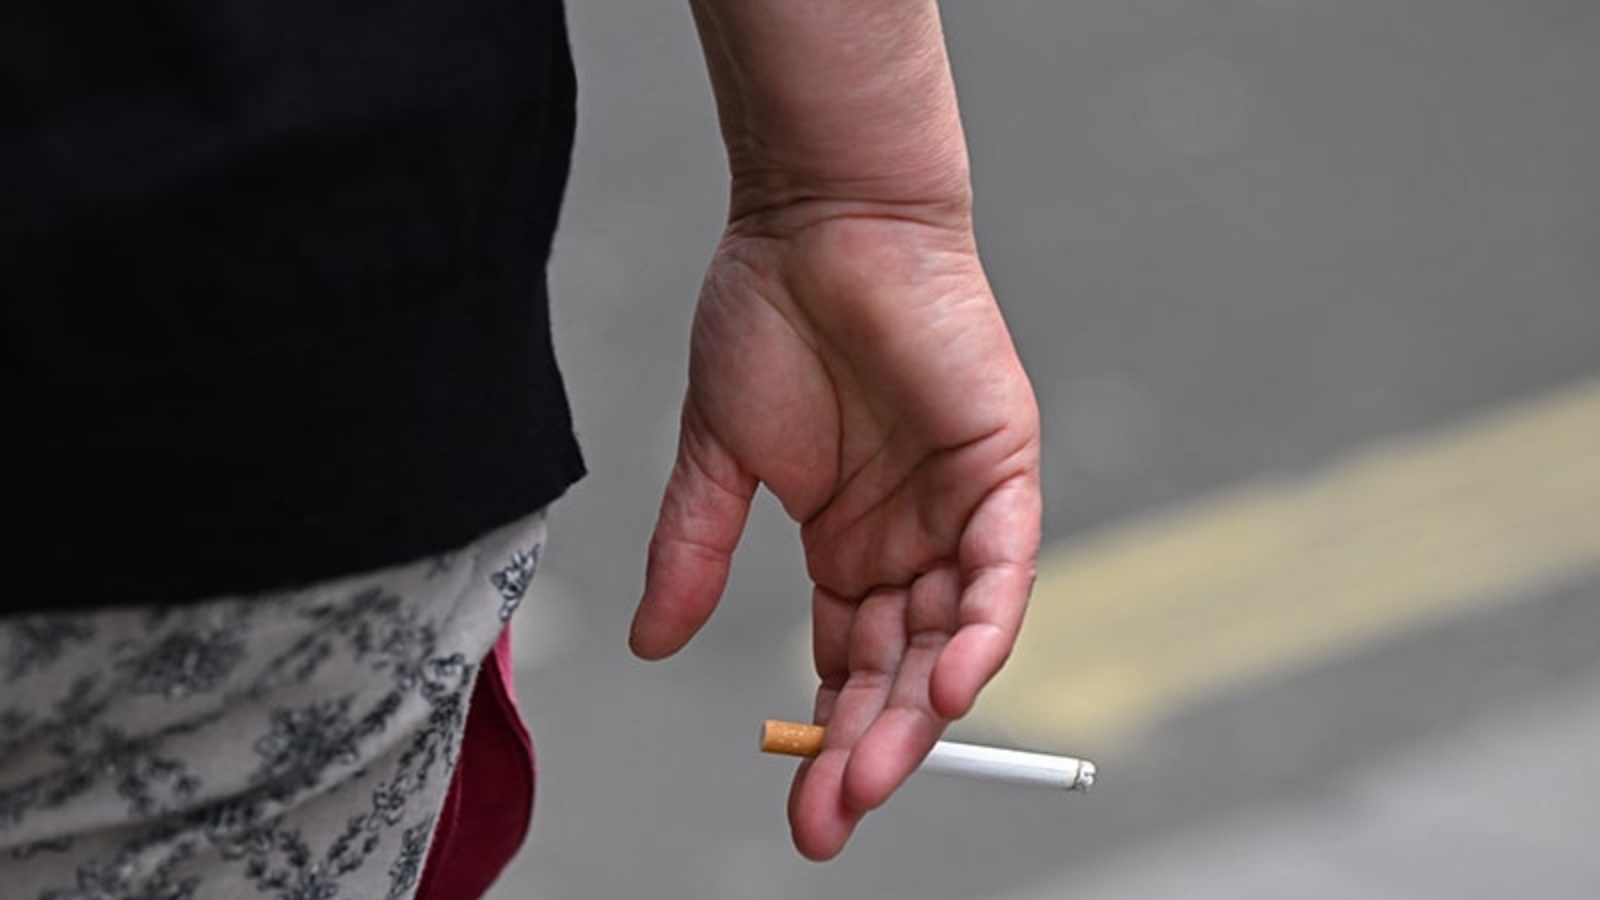 الولايات المتحدة تسعى إلى خفض مستوى النيكوتين بشكل كبير في السجائر المباعة (توضيحية)